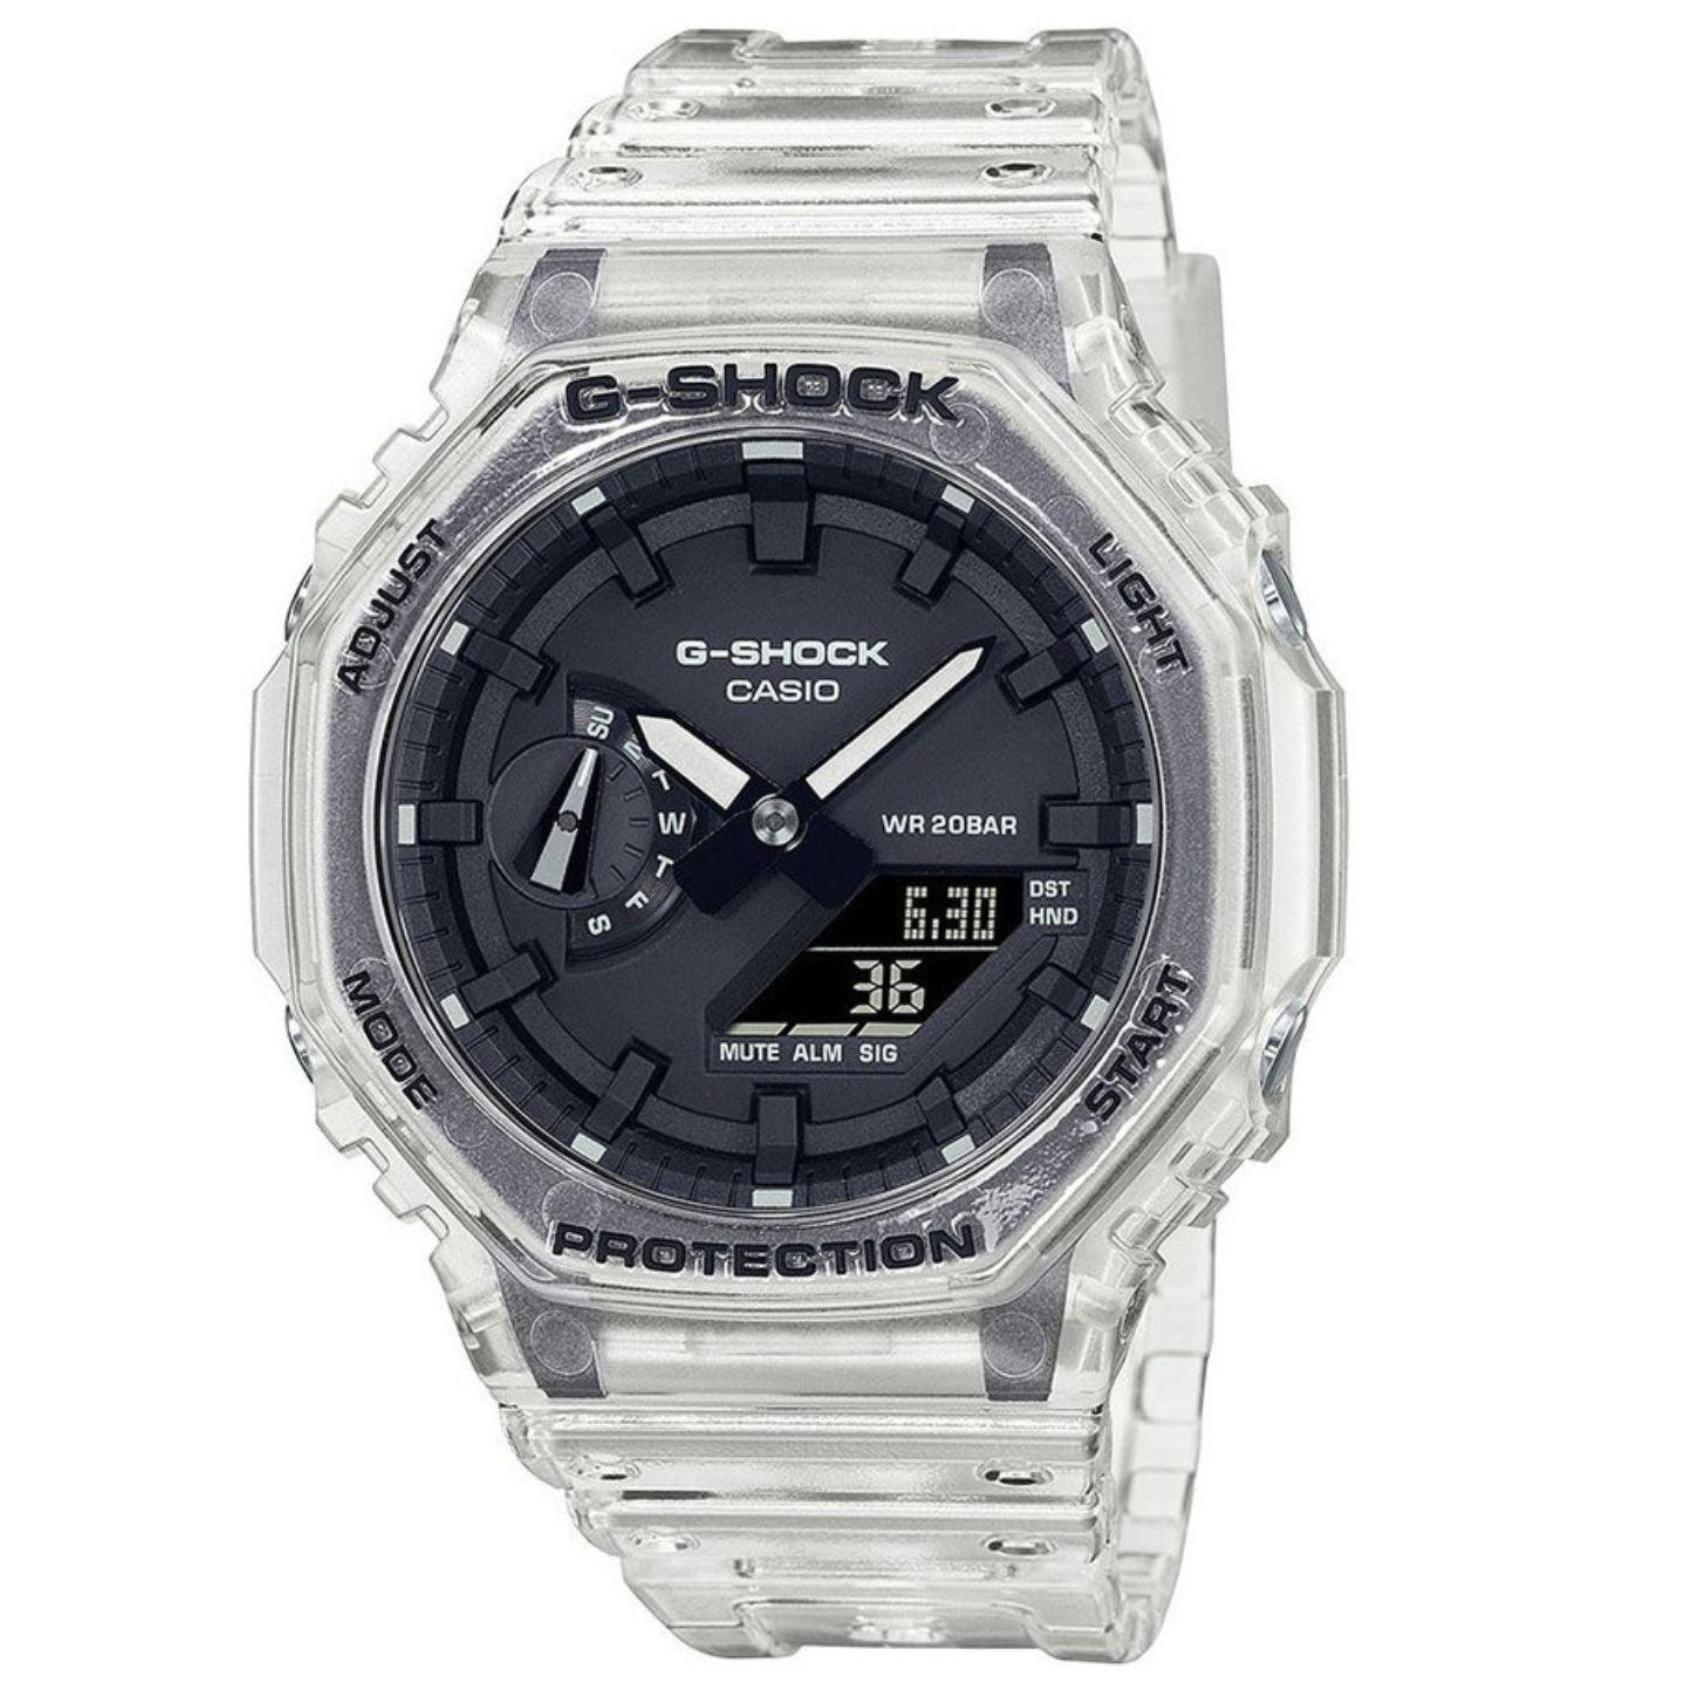 Ρολόι χρονογράφος Casio G-Shock GA-2100SKE-7AER με διάφανο καουτσούκ λουράκι, μαύρο καντράν σε οκτάγωνο σχημα με ψηφιακή ένδειξη και στεγανότητα 20ATM-200Μ.